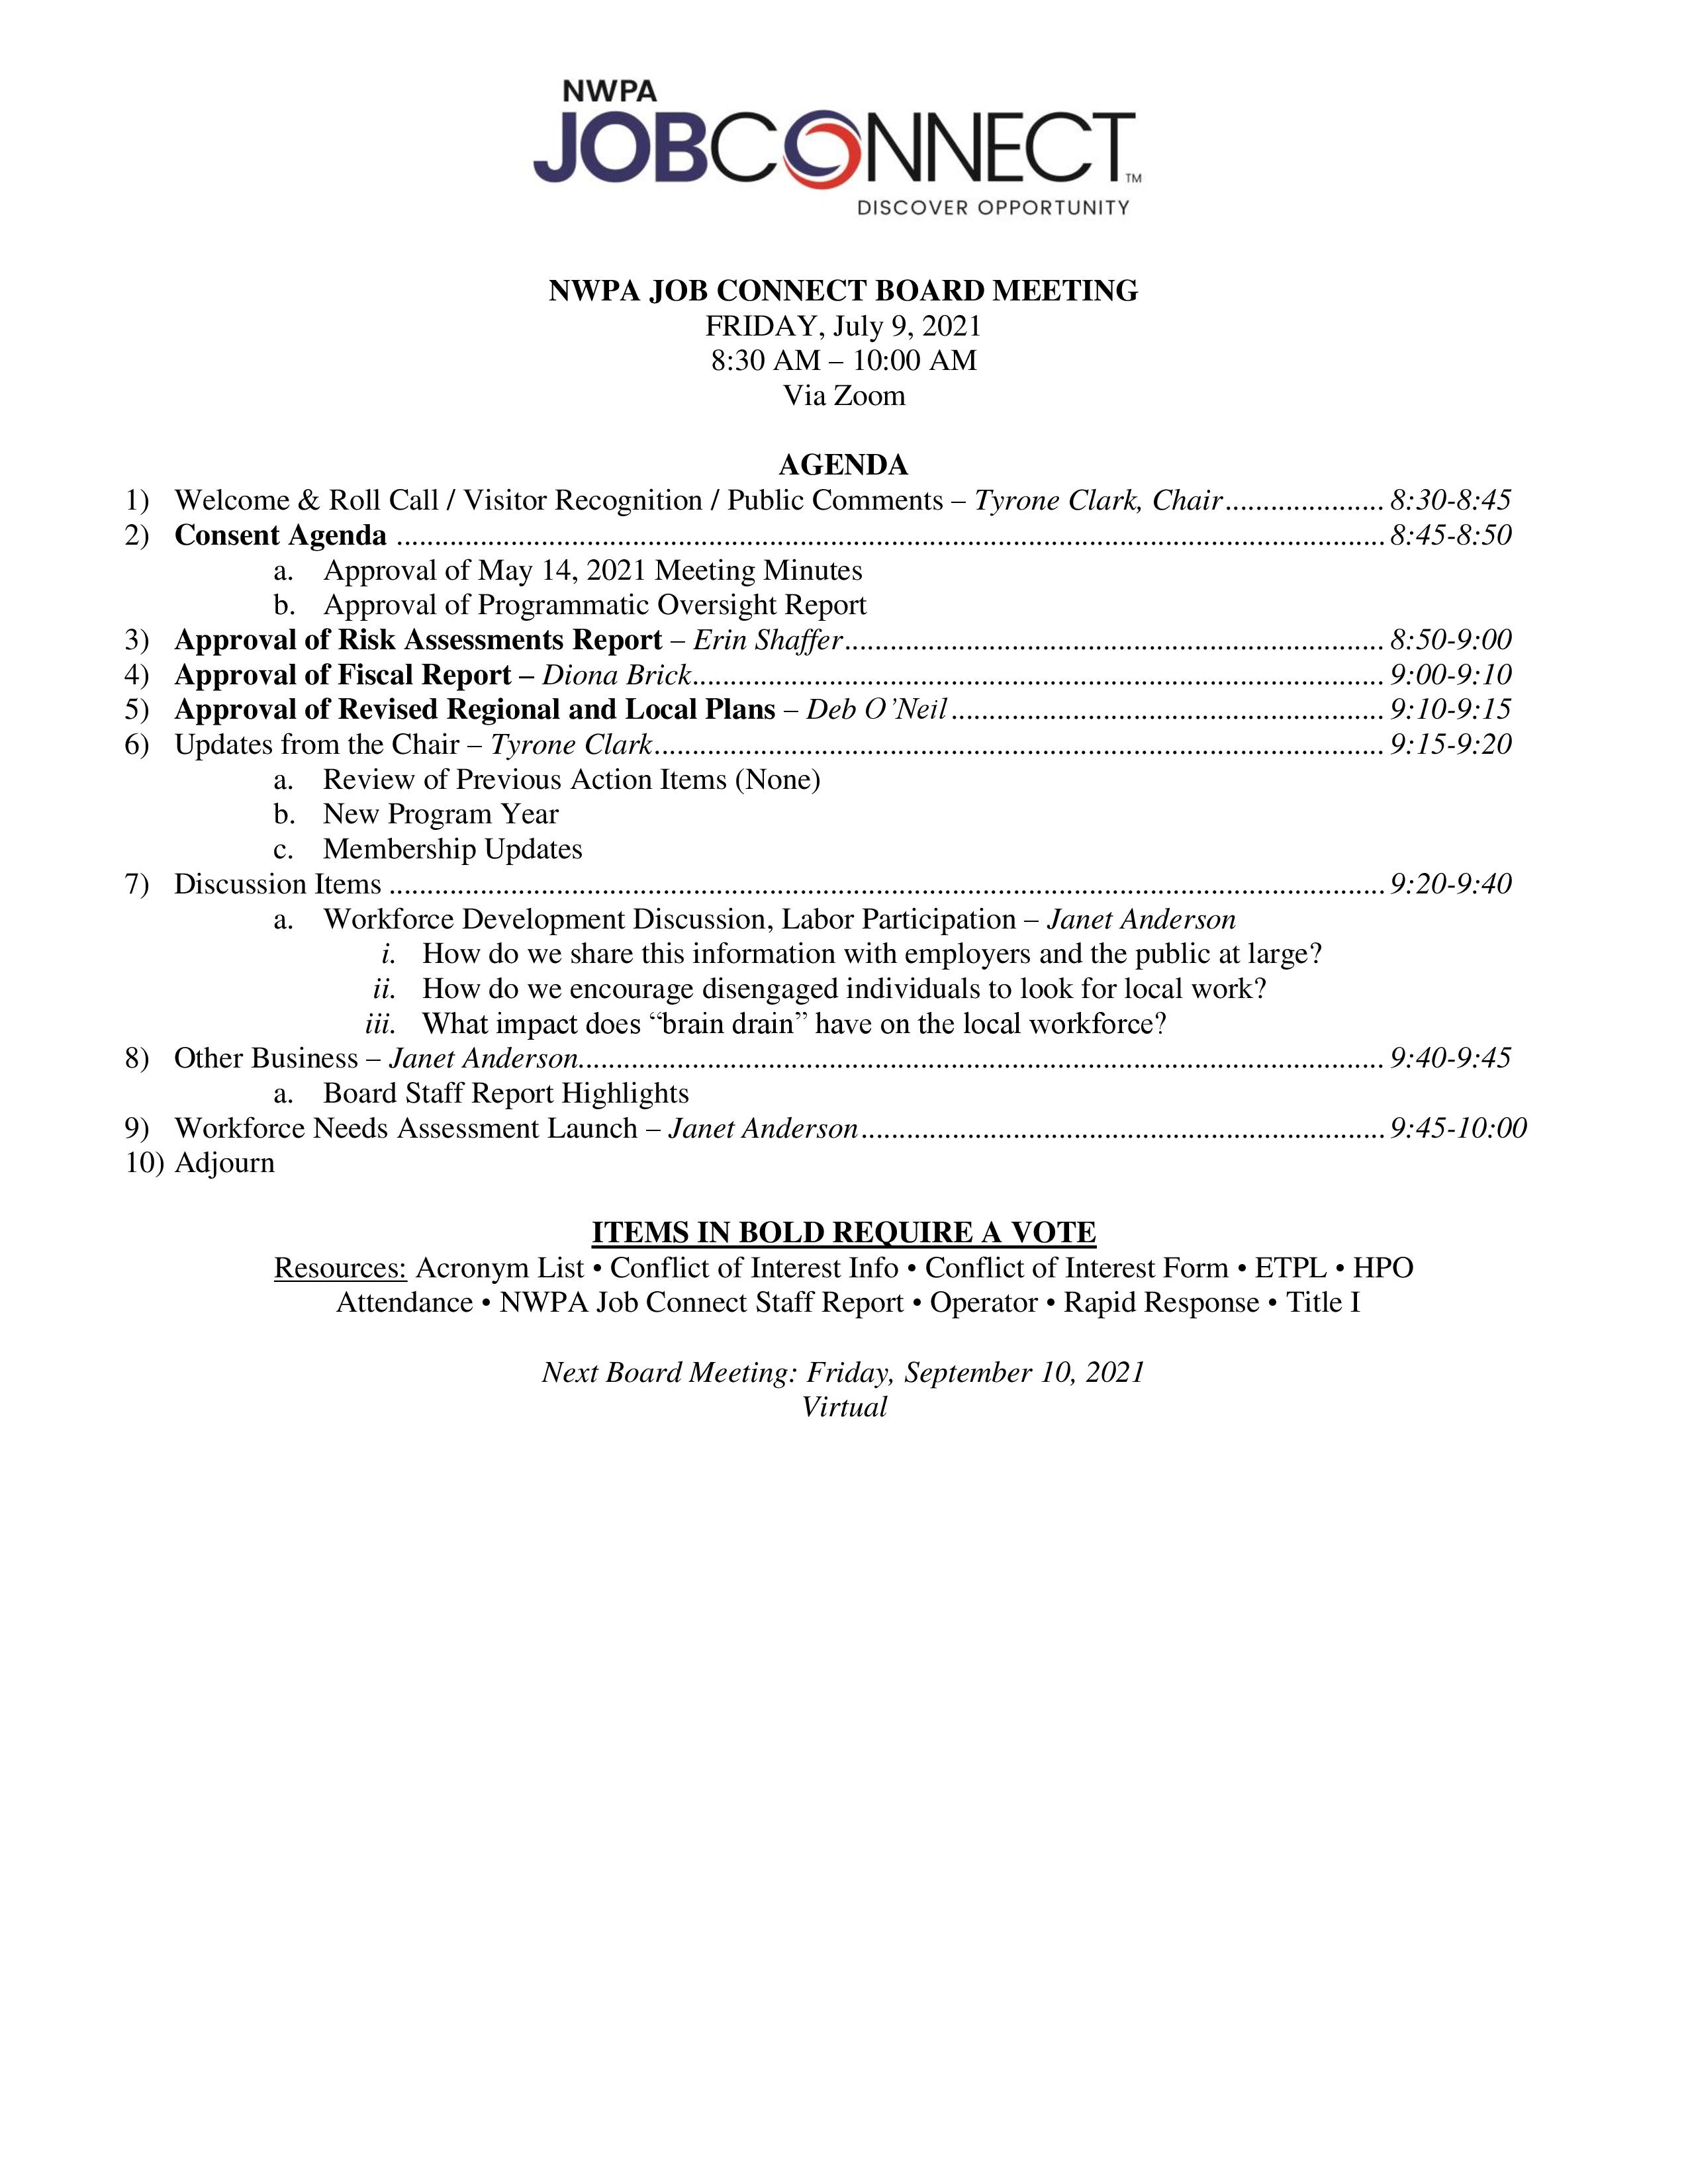 NWPA WDB Agenda 07-09-21